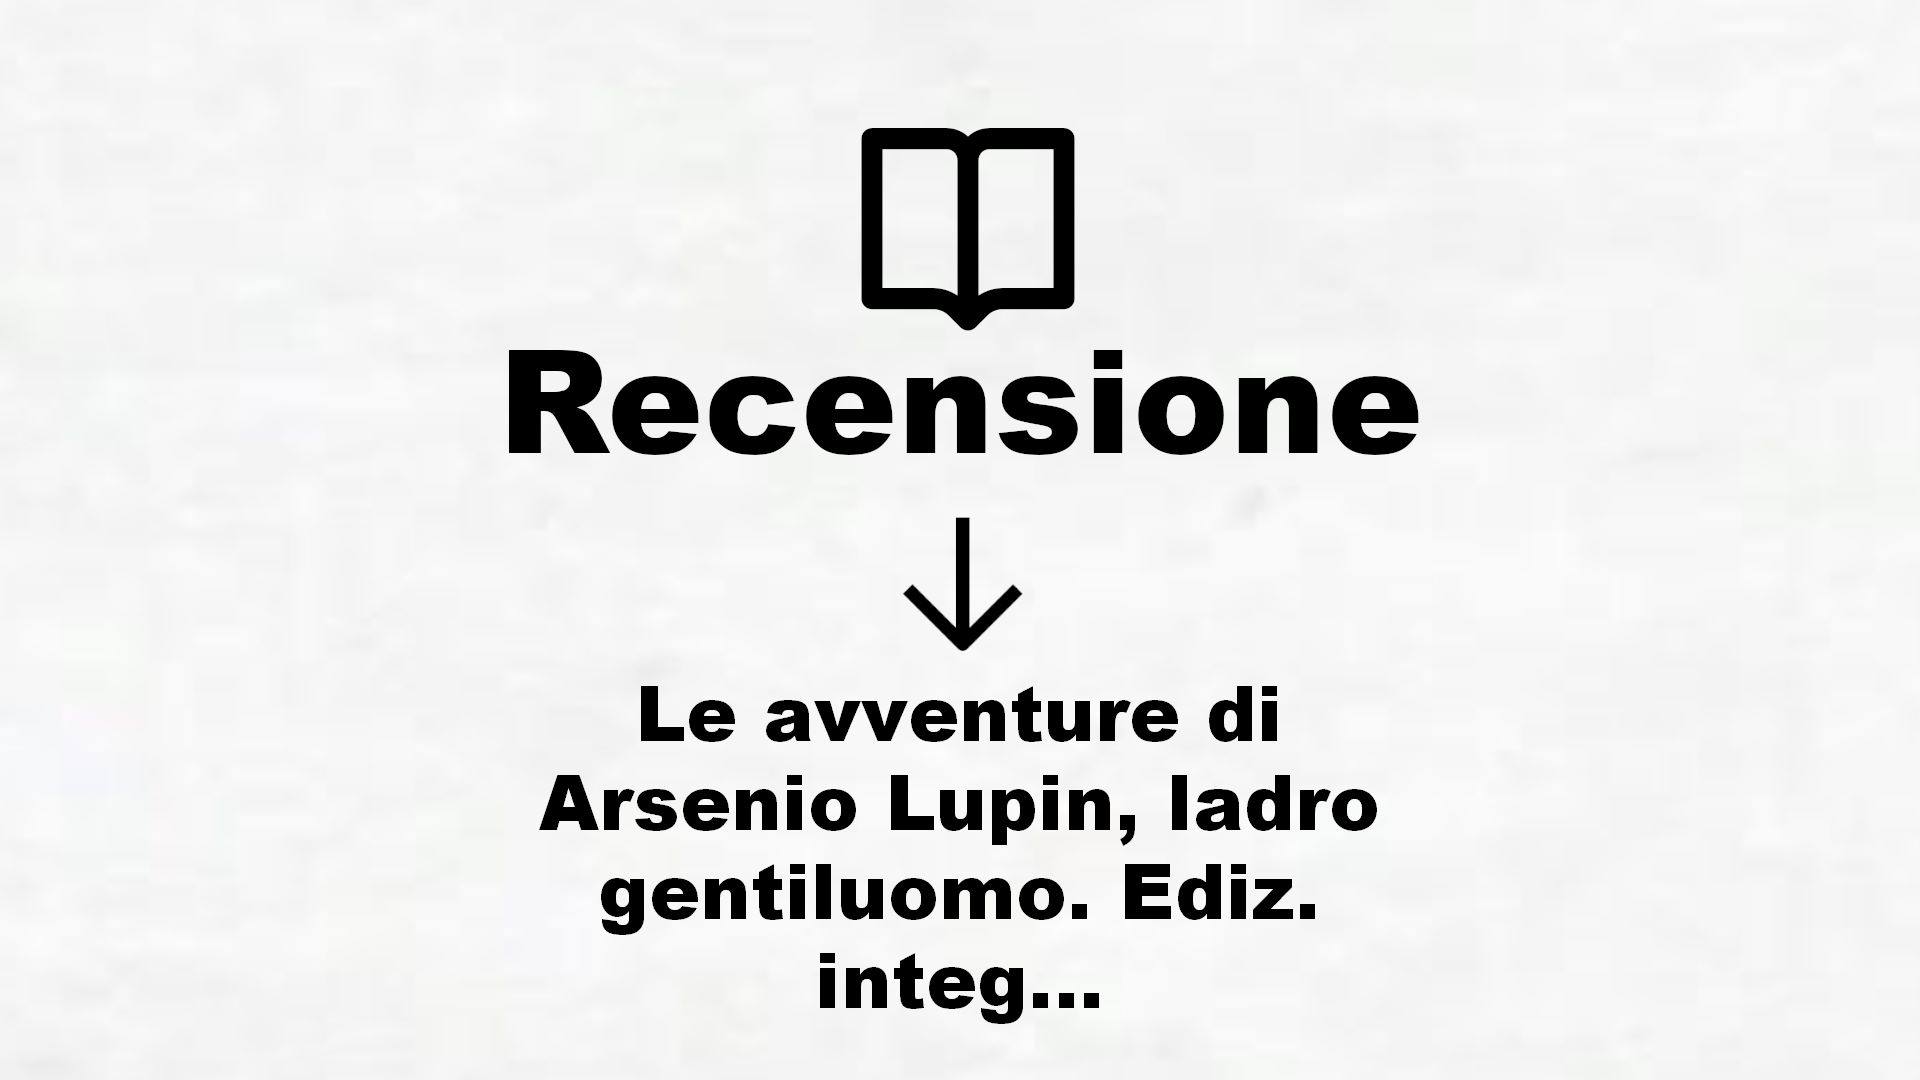 Le avventure di Arsenio Lupin, ladro gentiluomo. Ediz. integrale – Recensione Libro